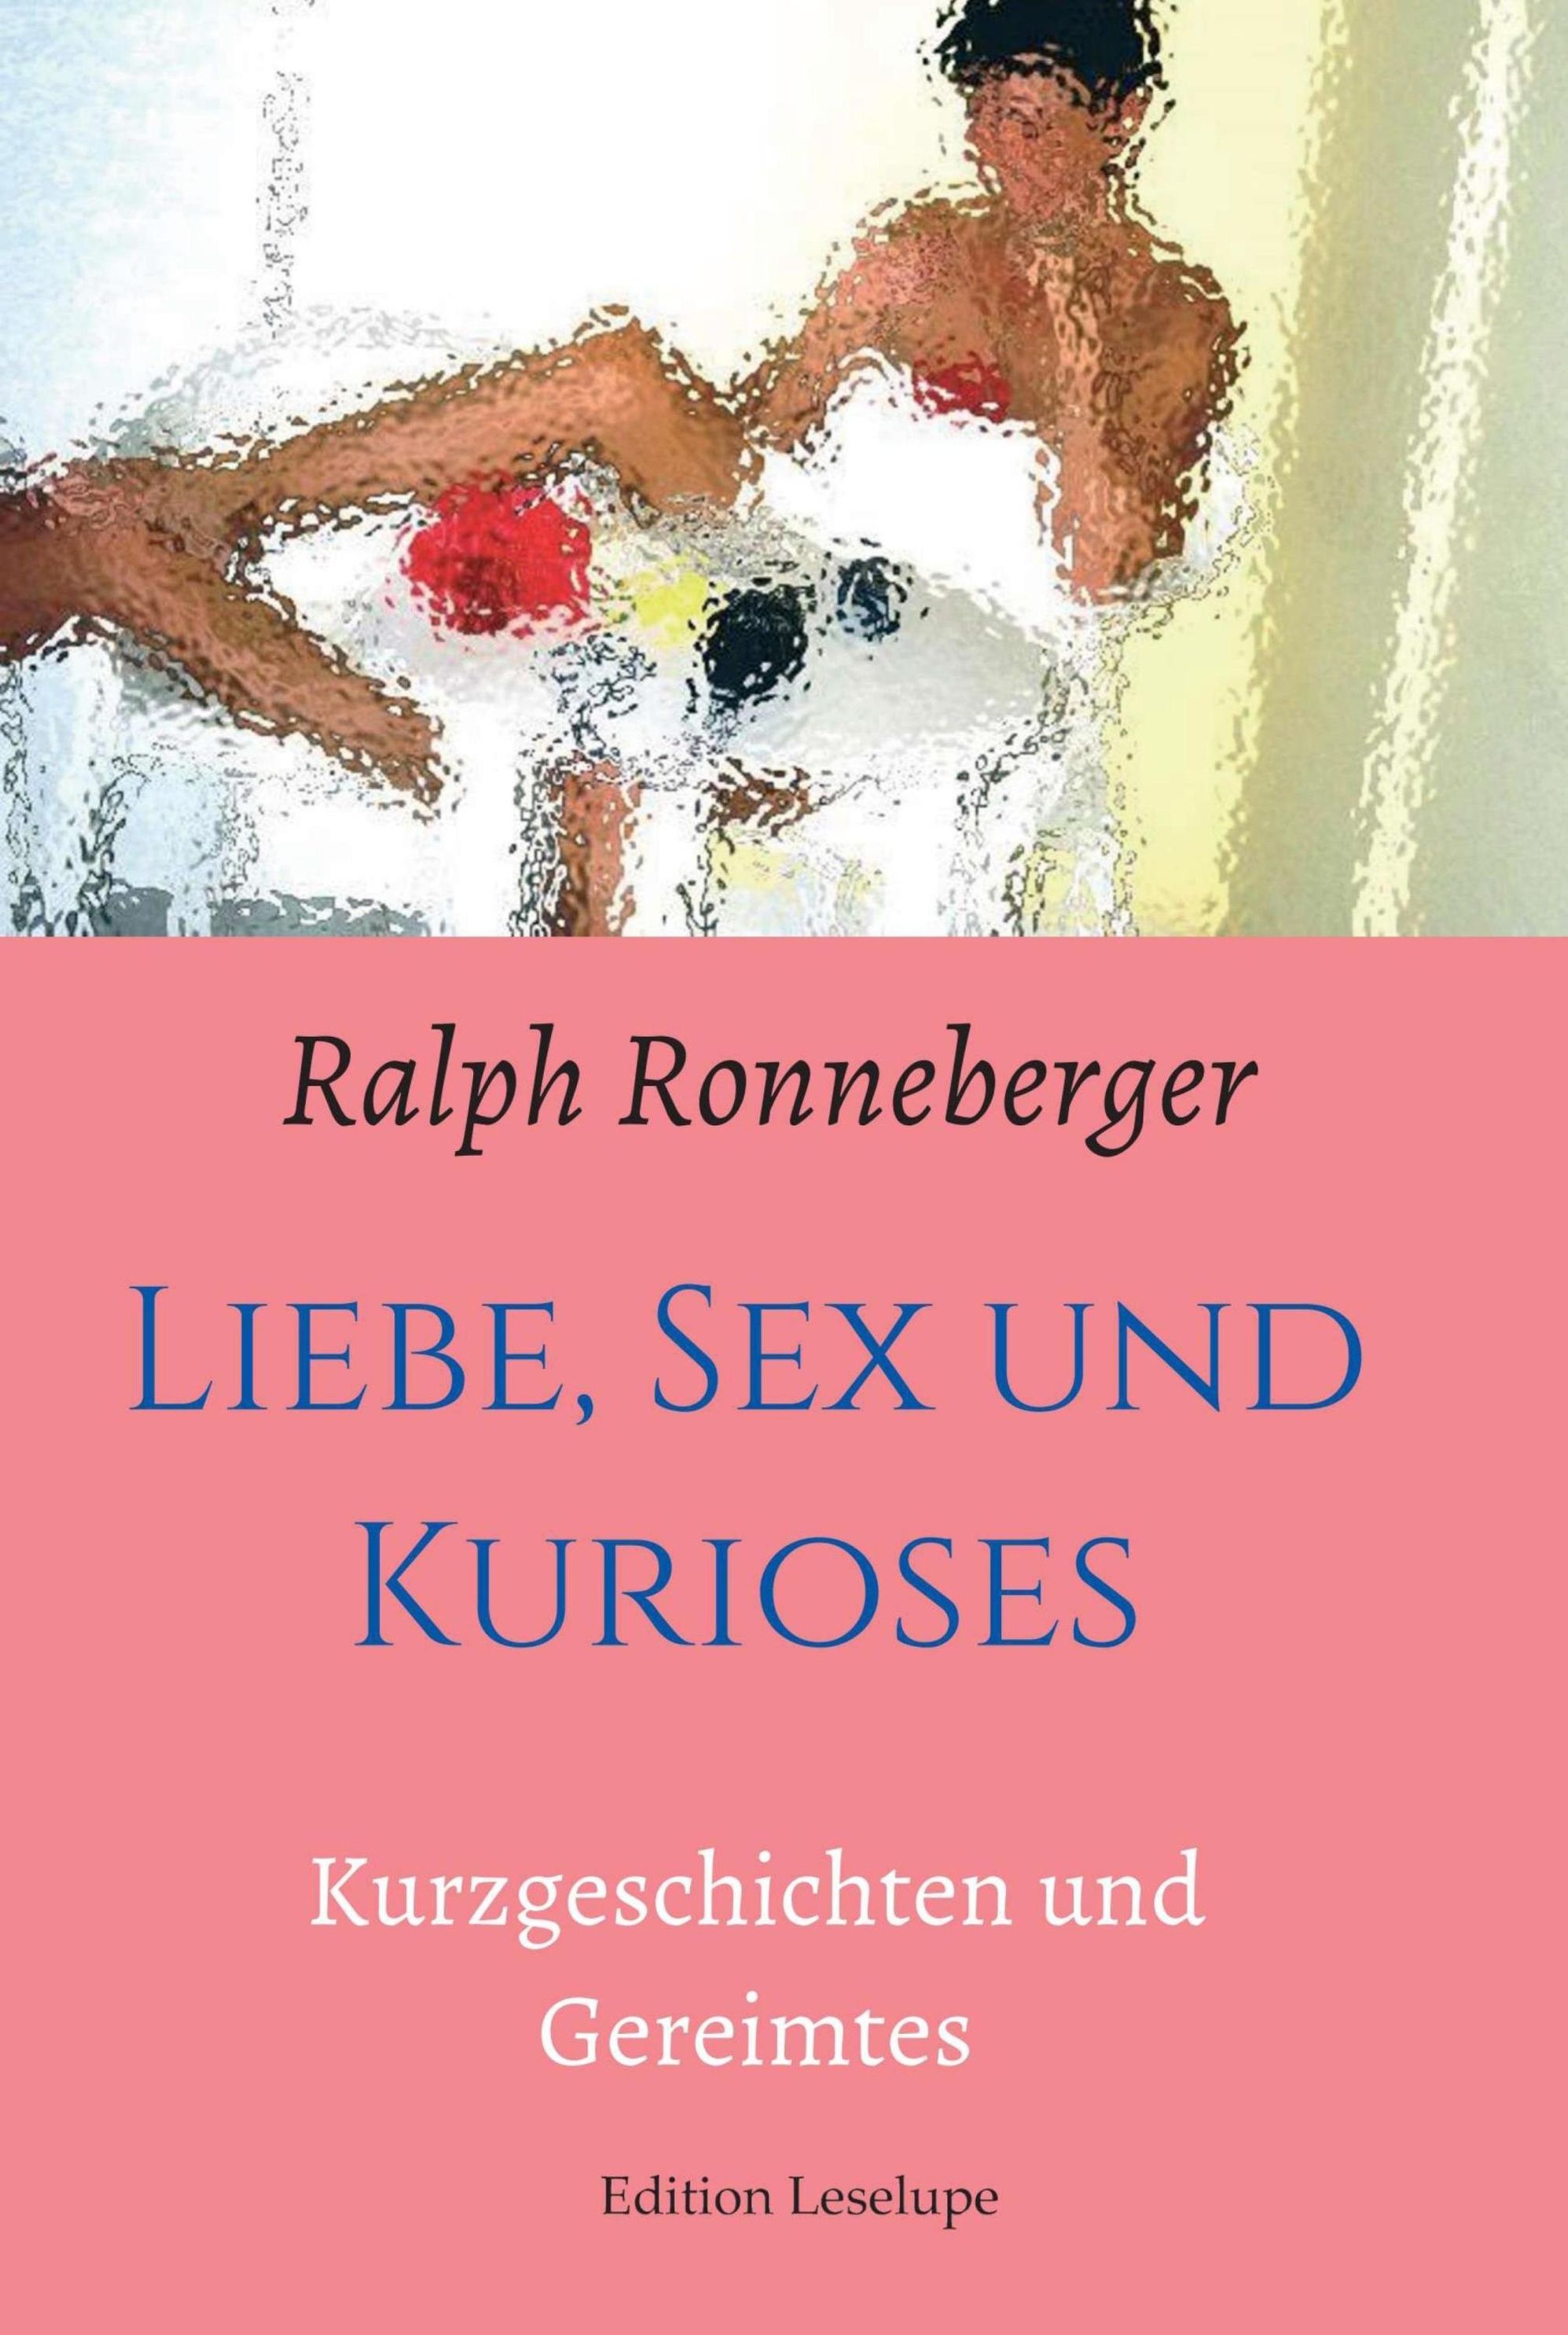 Liebe, Sex und Kurioses eBook v. Ralph Ronneberger | Weltbild